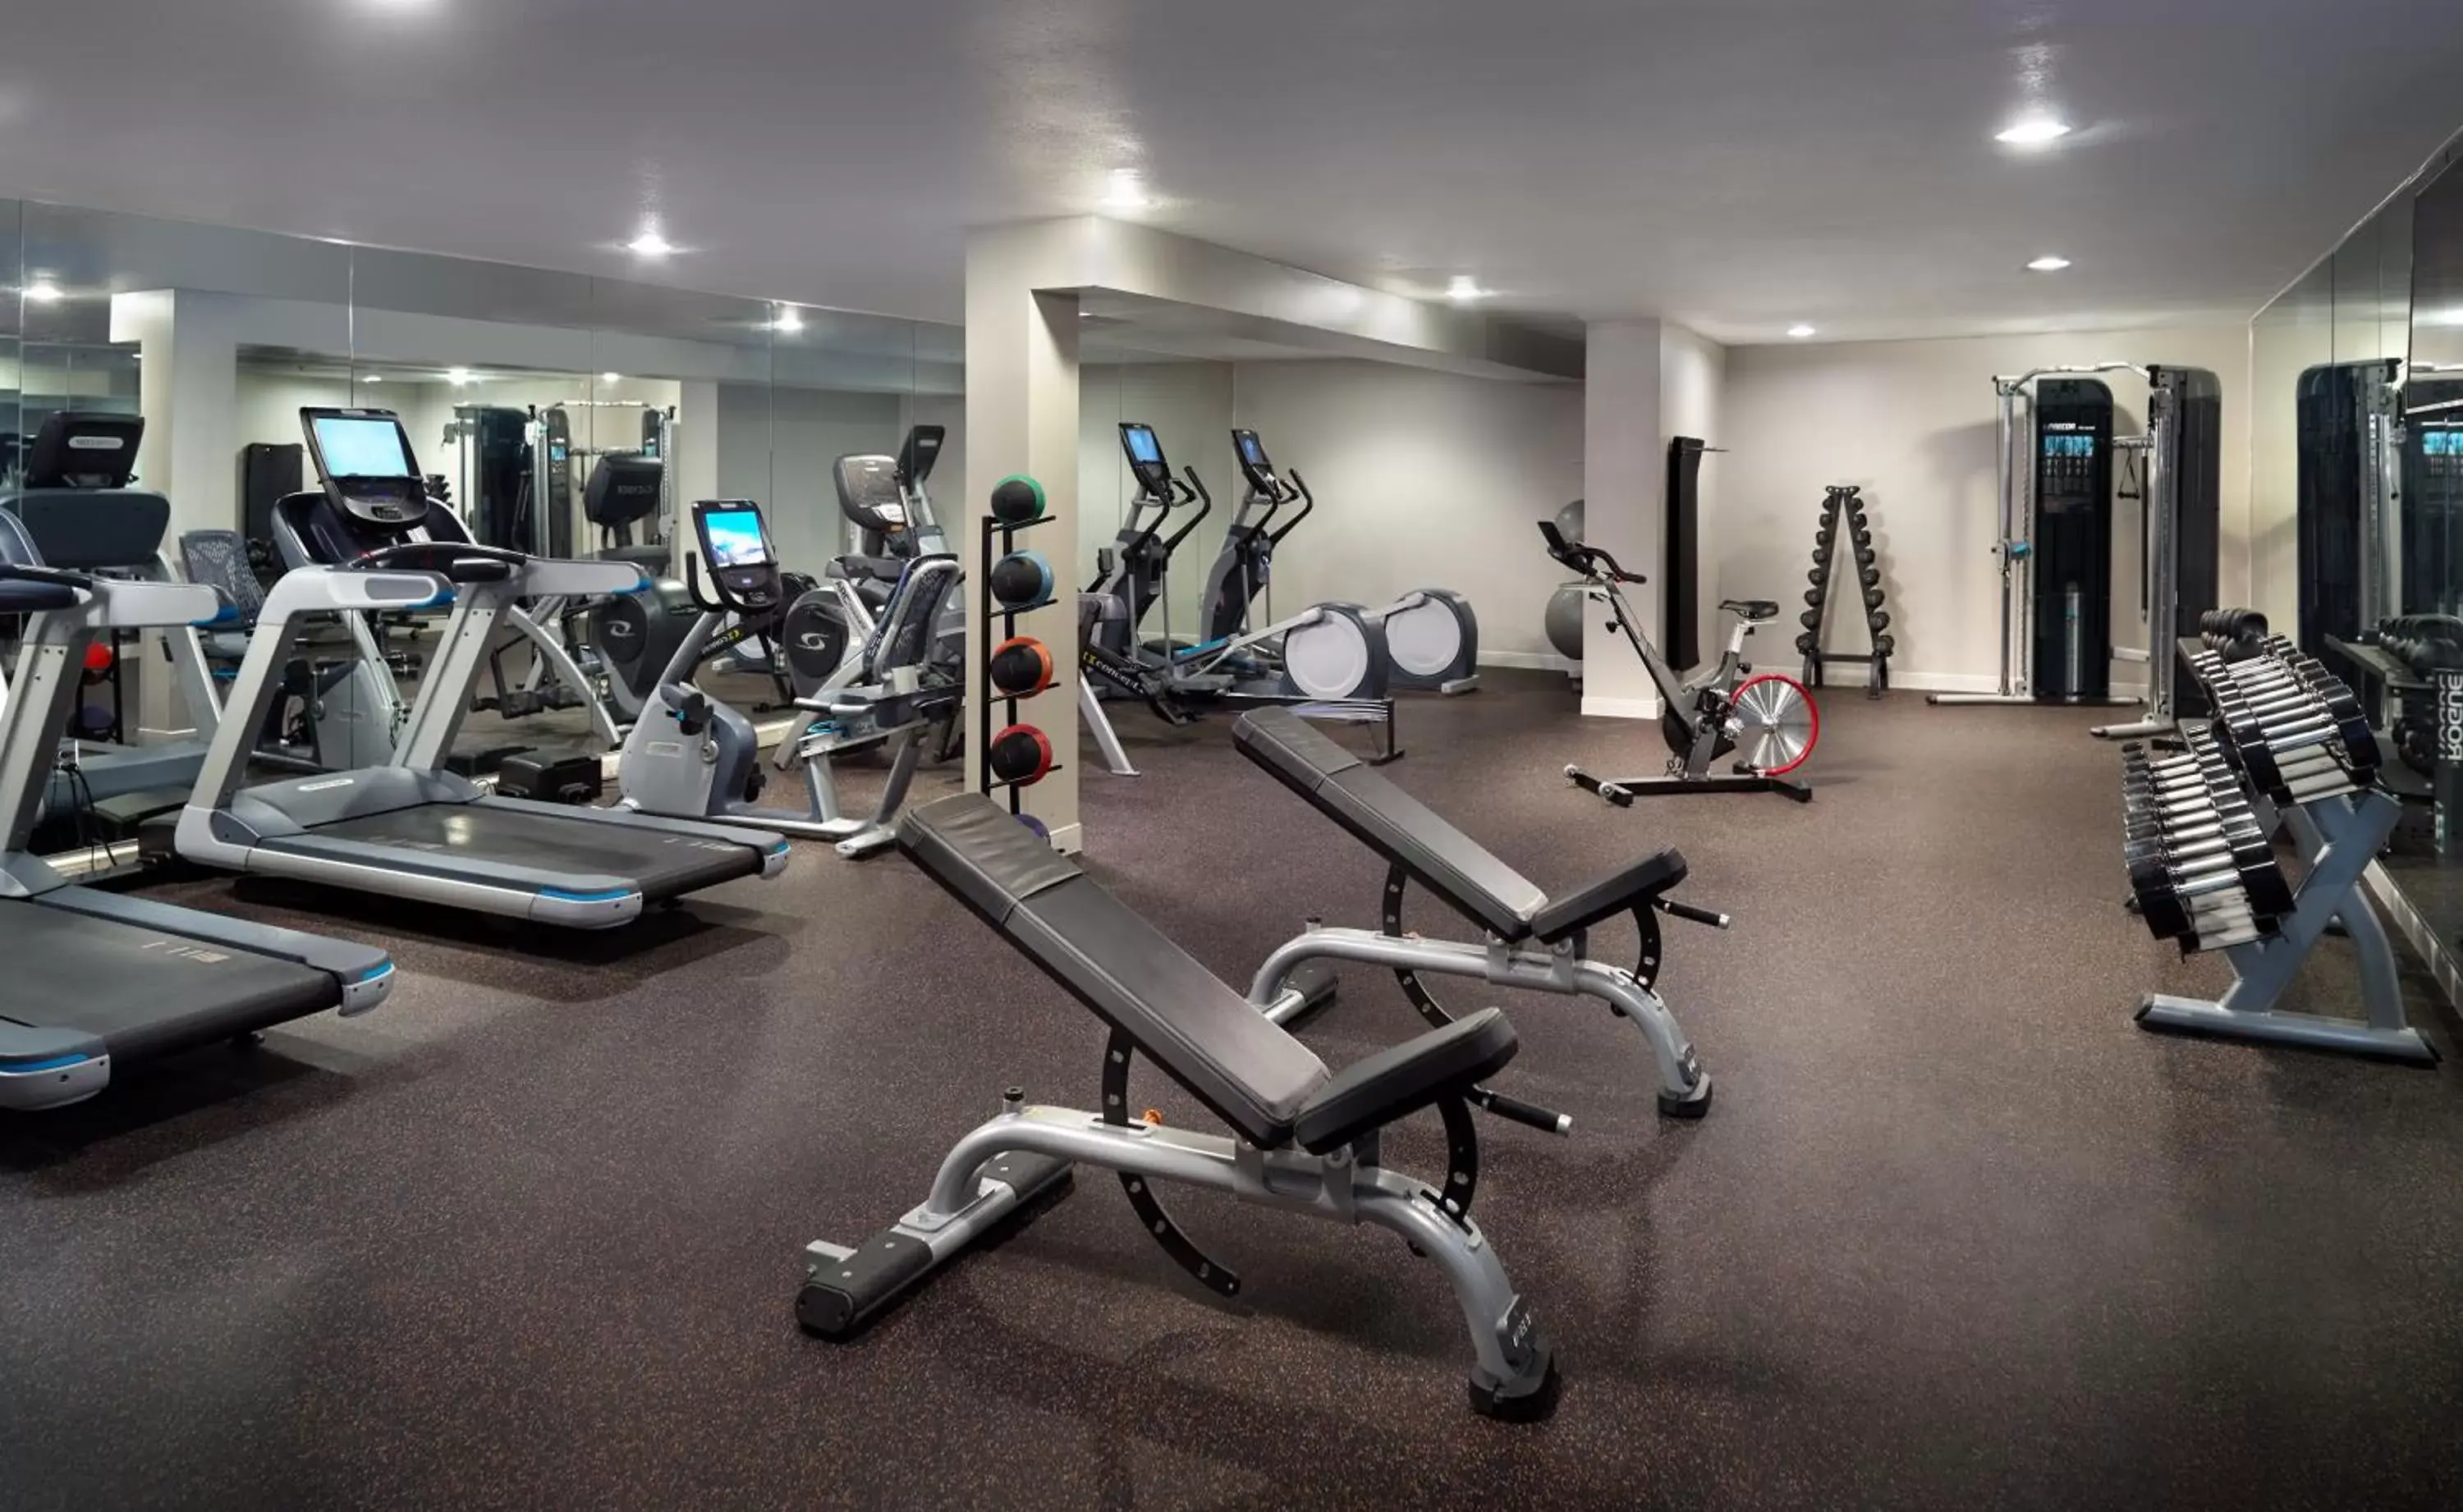 Fitness centre/facilities, Fitness Center/Facilities in Hyatt Regency Houston West